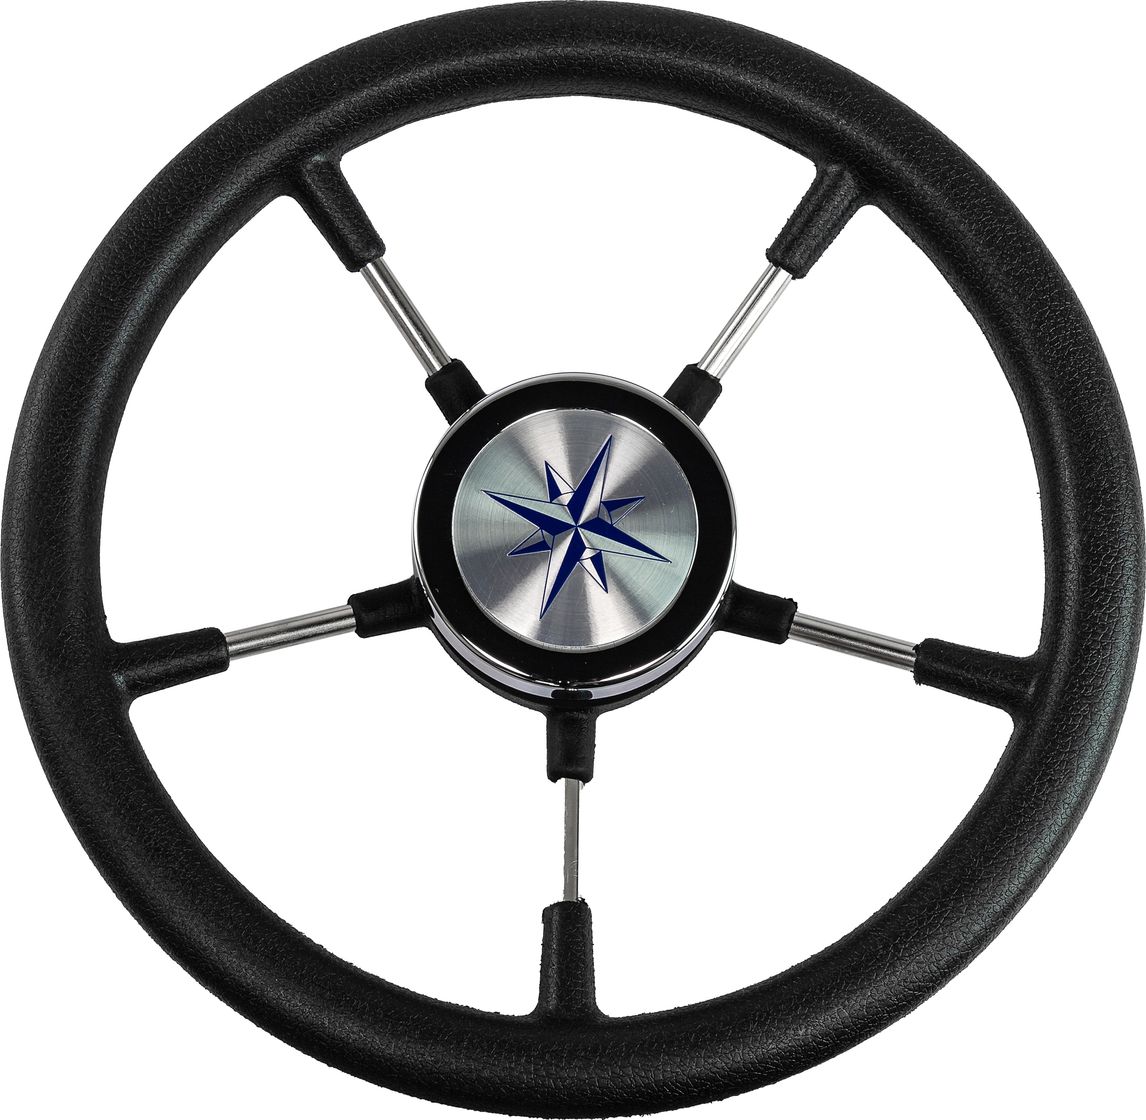 Рулевое колесо RIVA RSL обод черный, спицы серебряные д. 320 мм VN732022-01 рулевое колесо moza racing fsr rs21